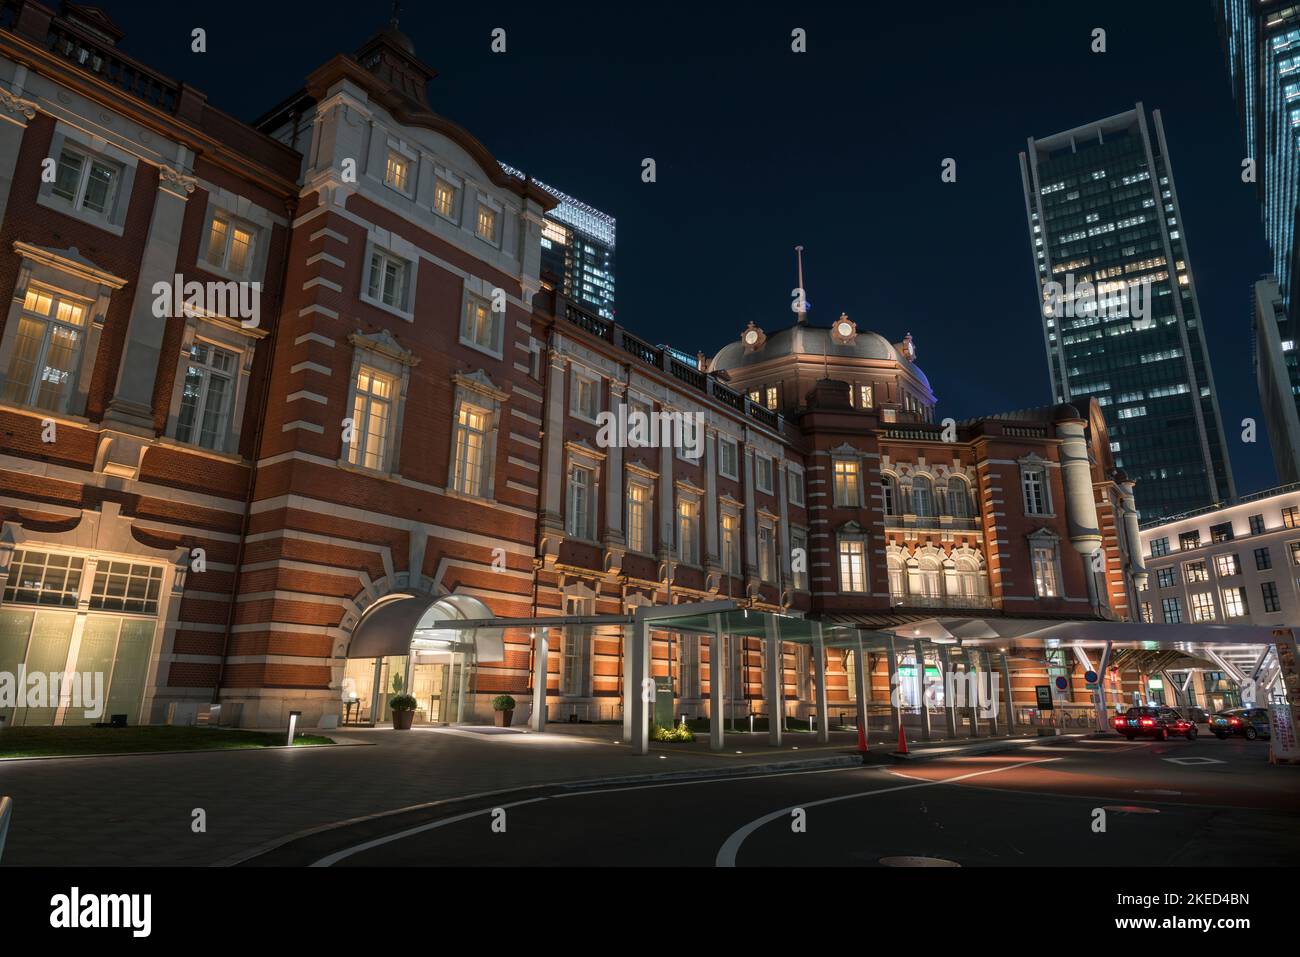 Côté ouest de la gare Marunouchi à la gare de Tokyo au Japon, vue de nuit. Banque D'Images